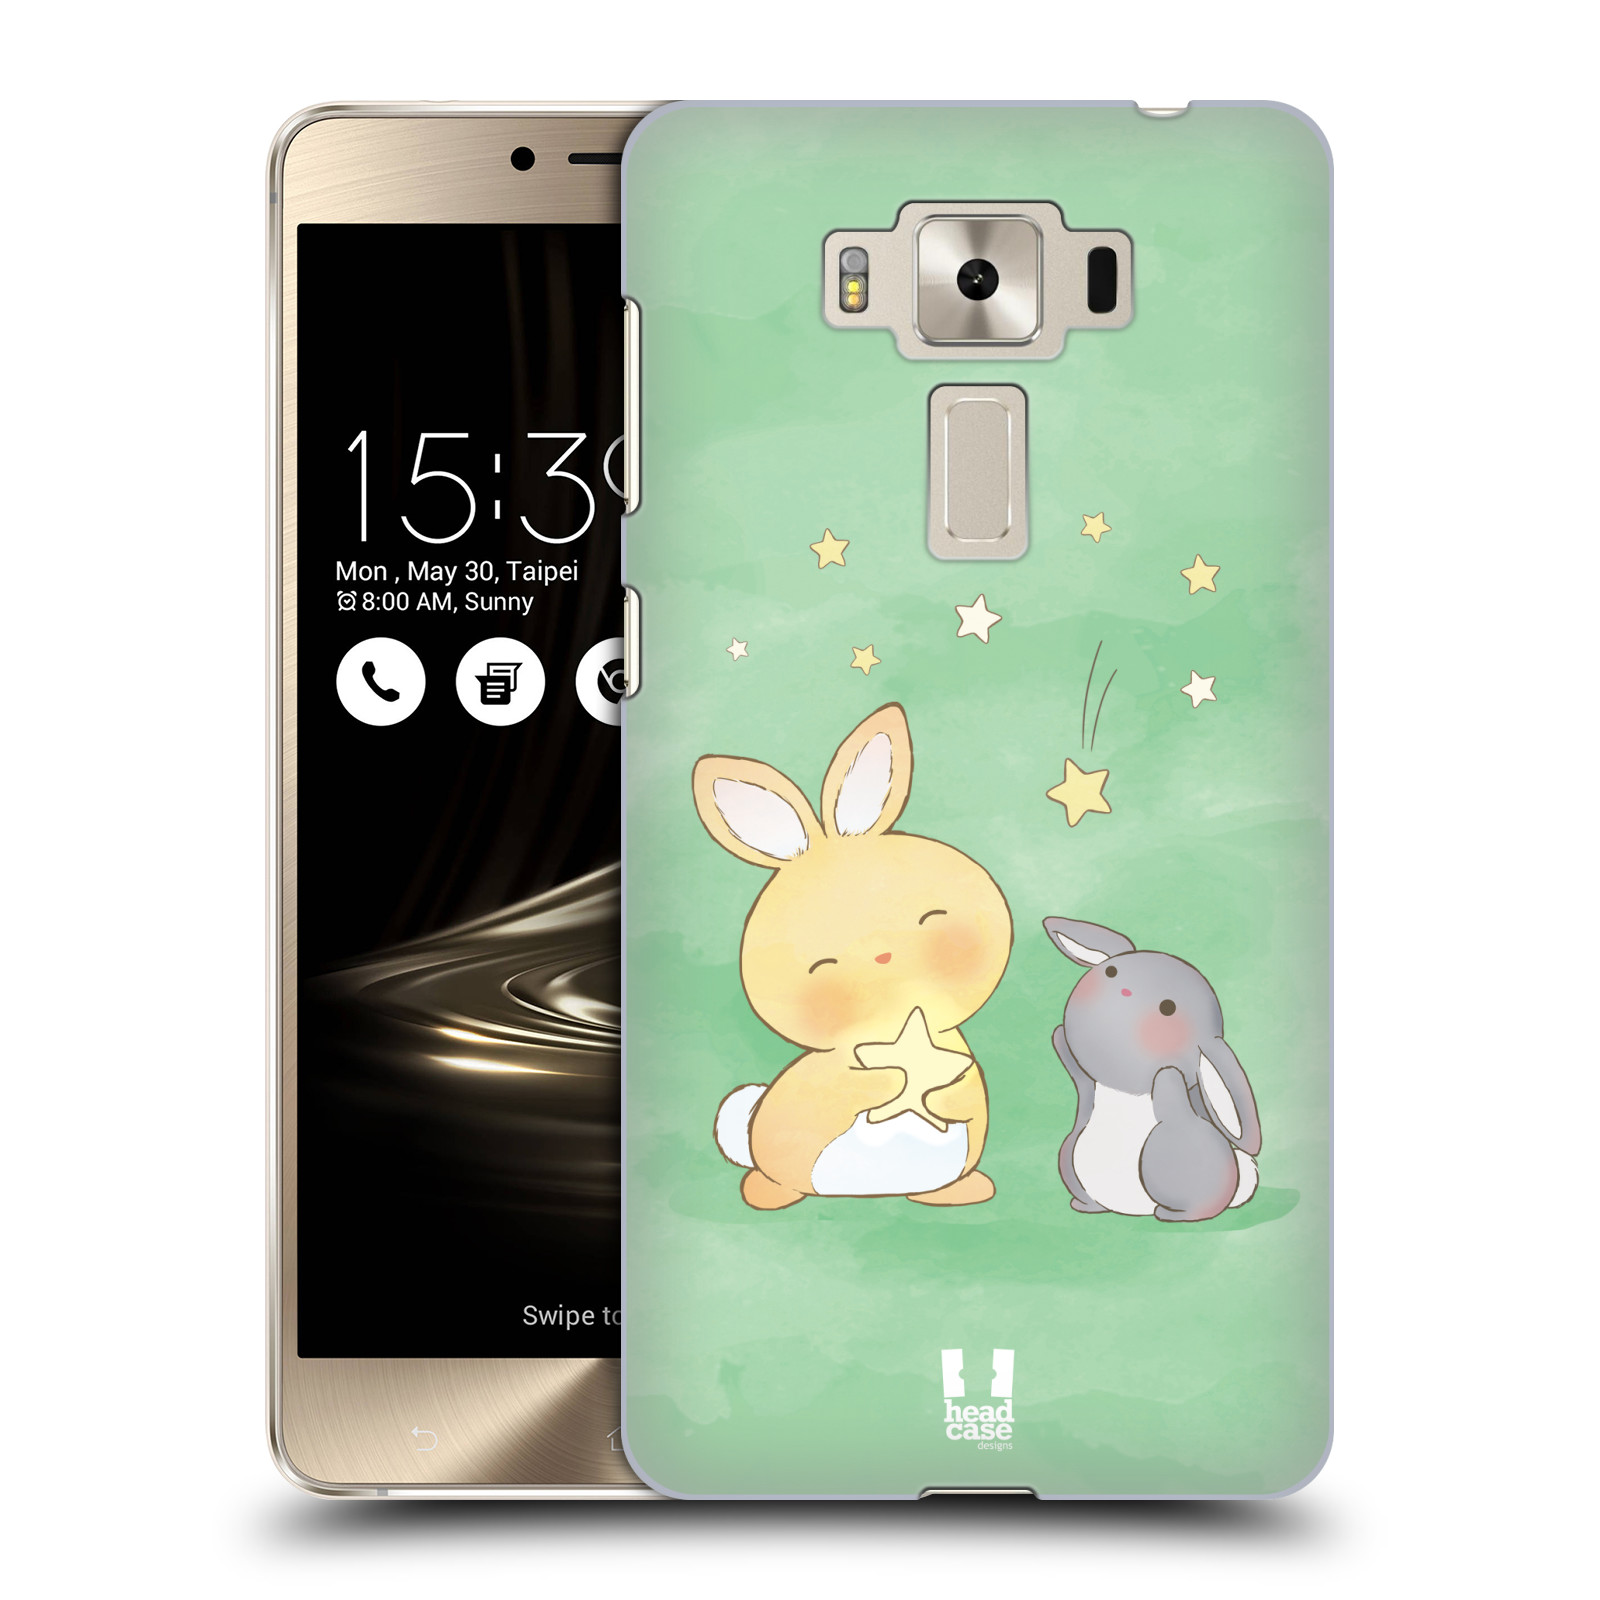 HEAD CASE plastový obal na mobil Asus Zenfone 3 DELUXE ZS550KL vzor králíček a hvězdy zelená